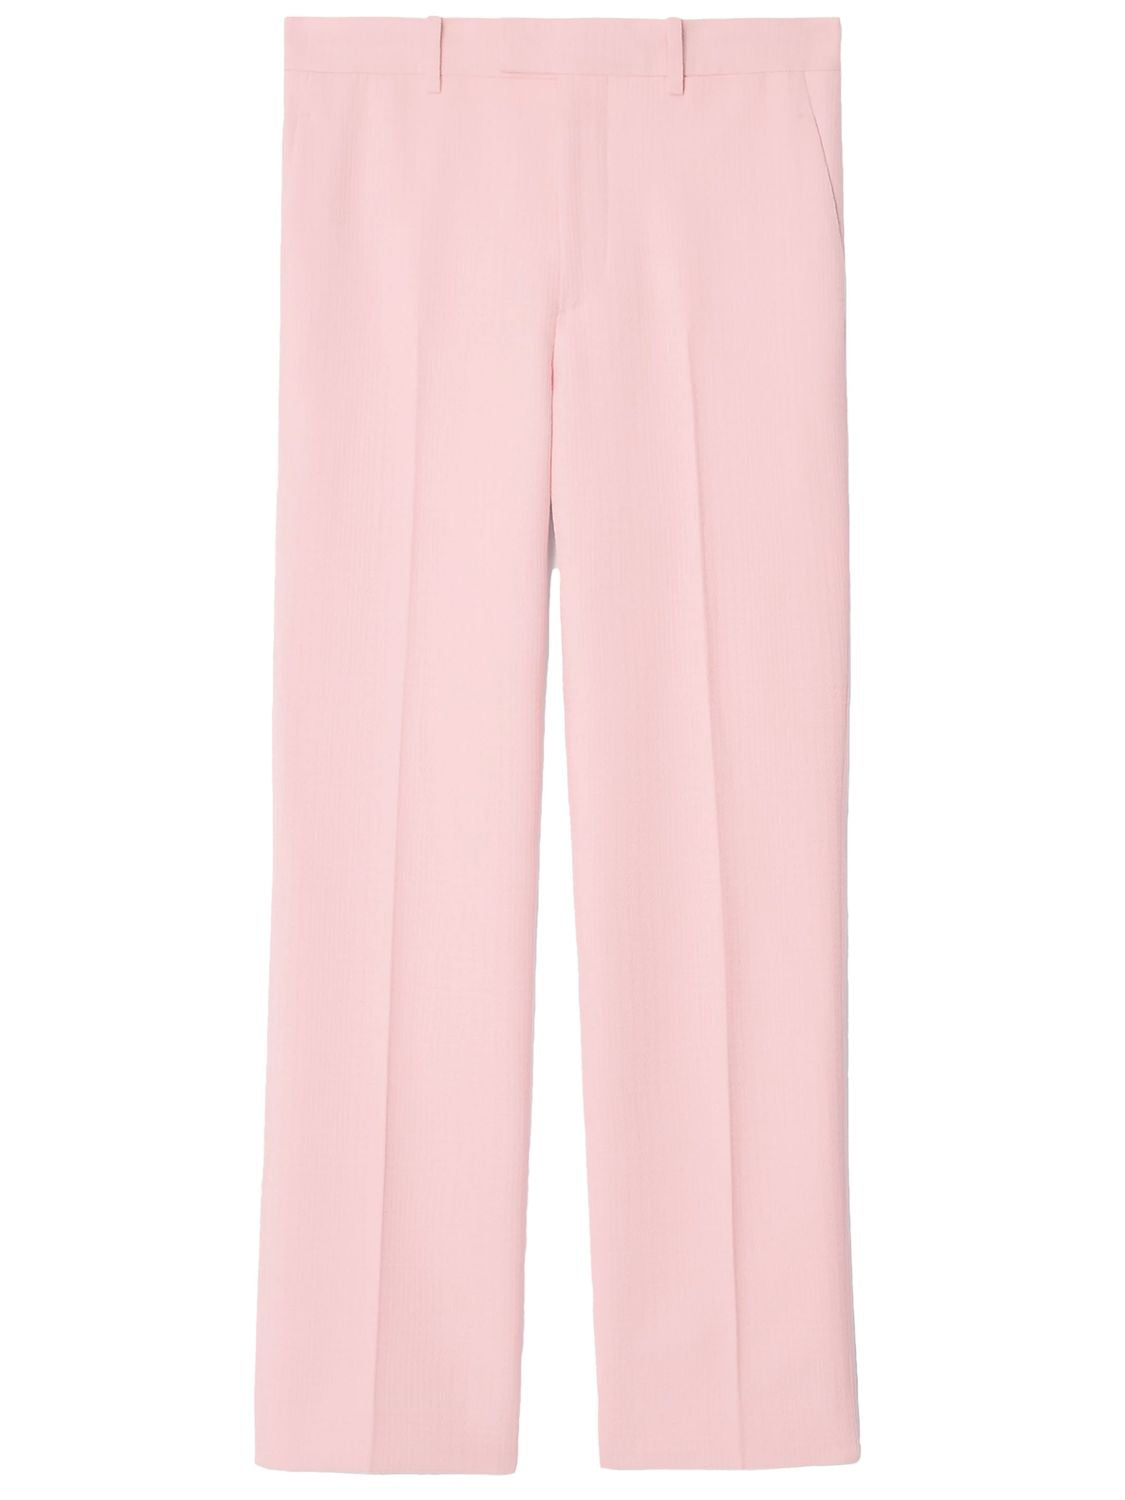 粉色羊毛定制长裤-正装版型-英国尺码